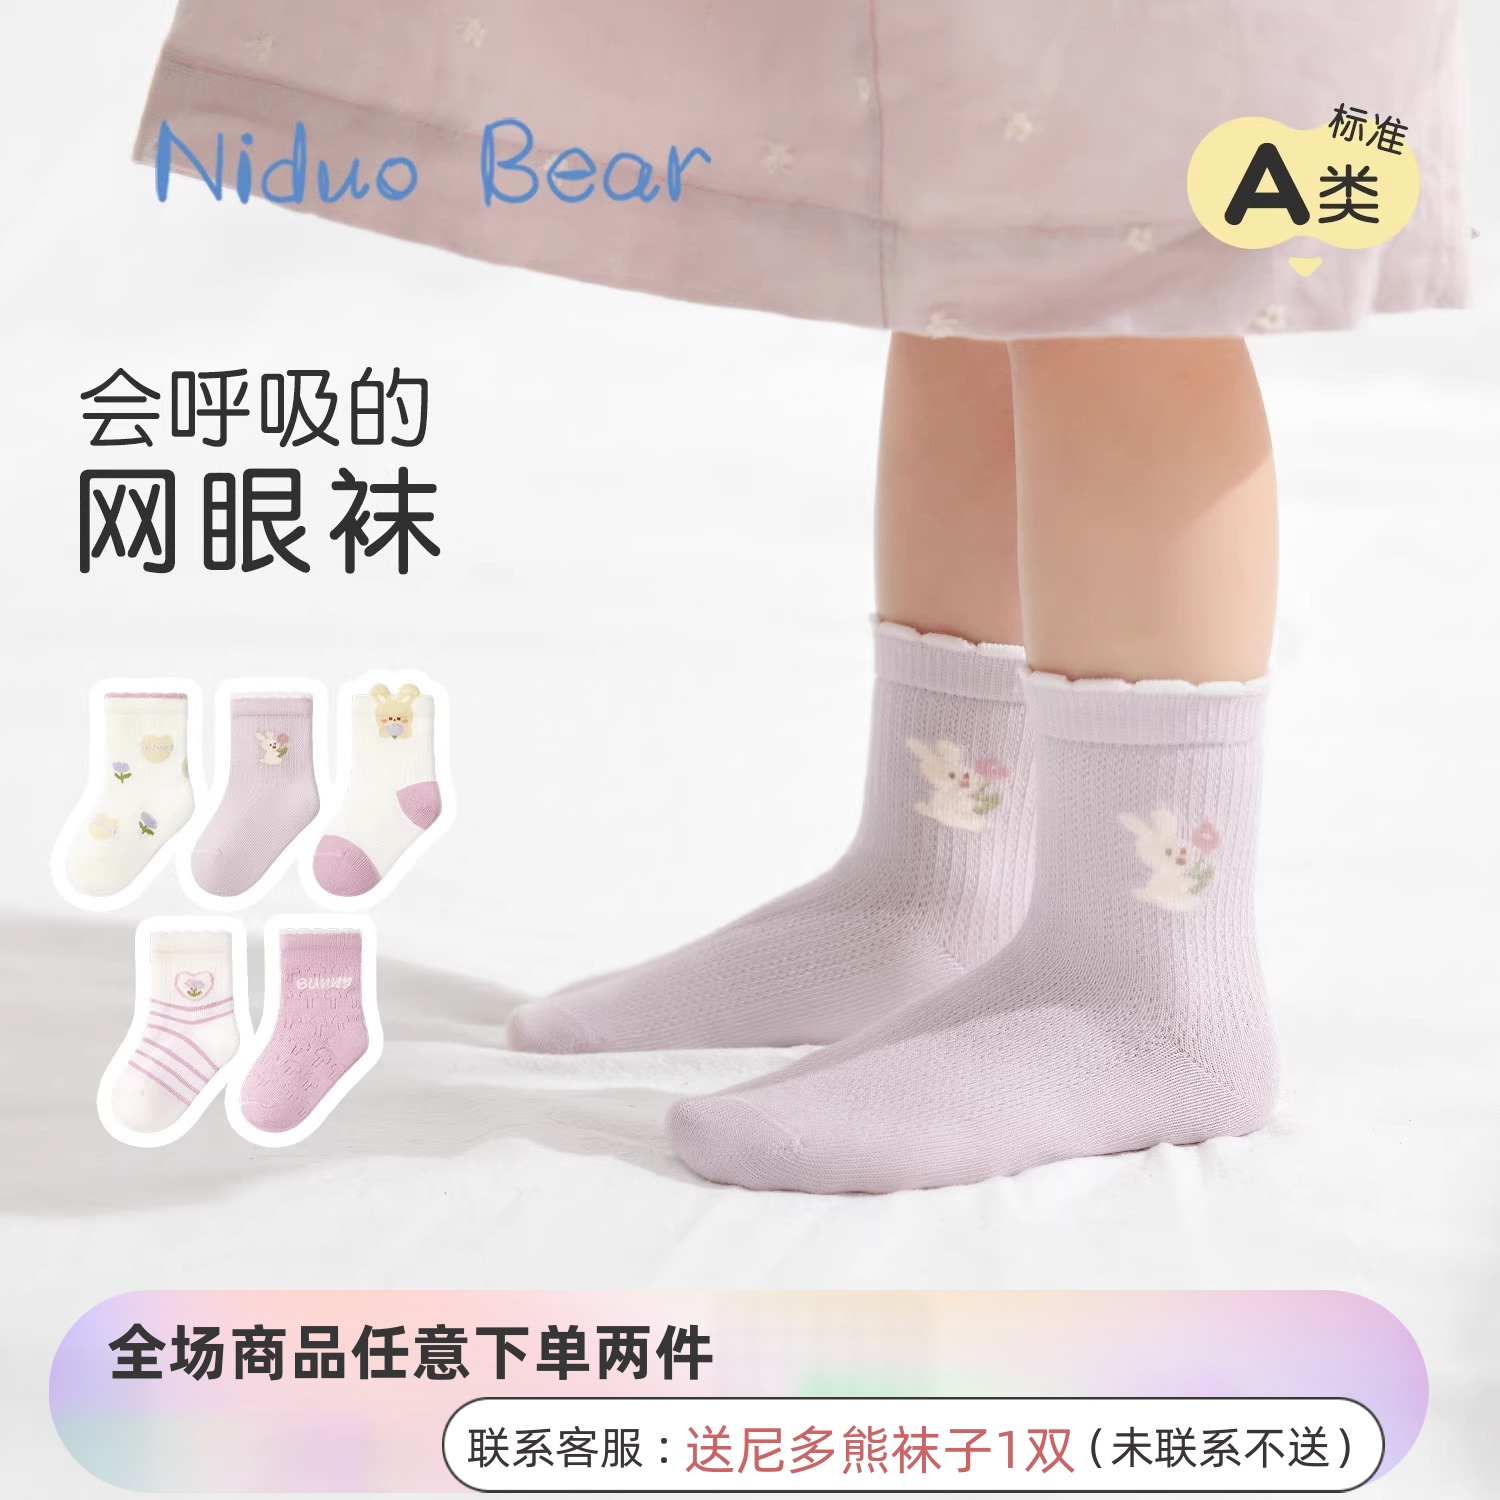 尼多熊女宝宝袜子夏季薄款棉袜婴儿网眼袜透气松口无骨袜女童袜子